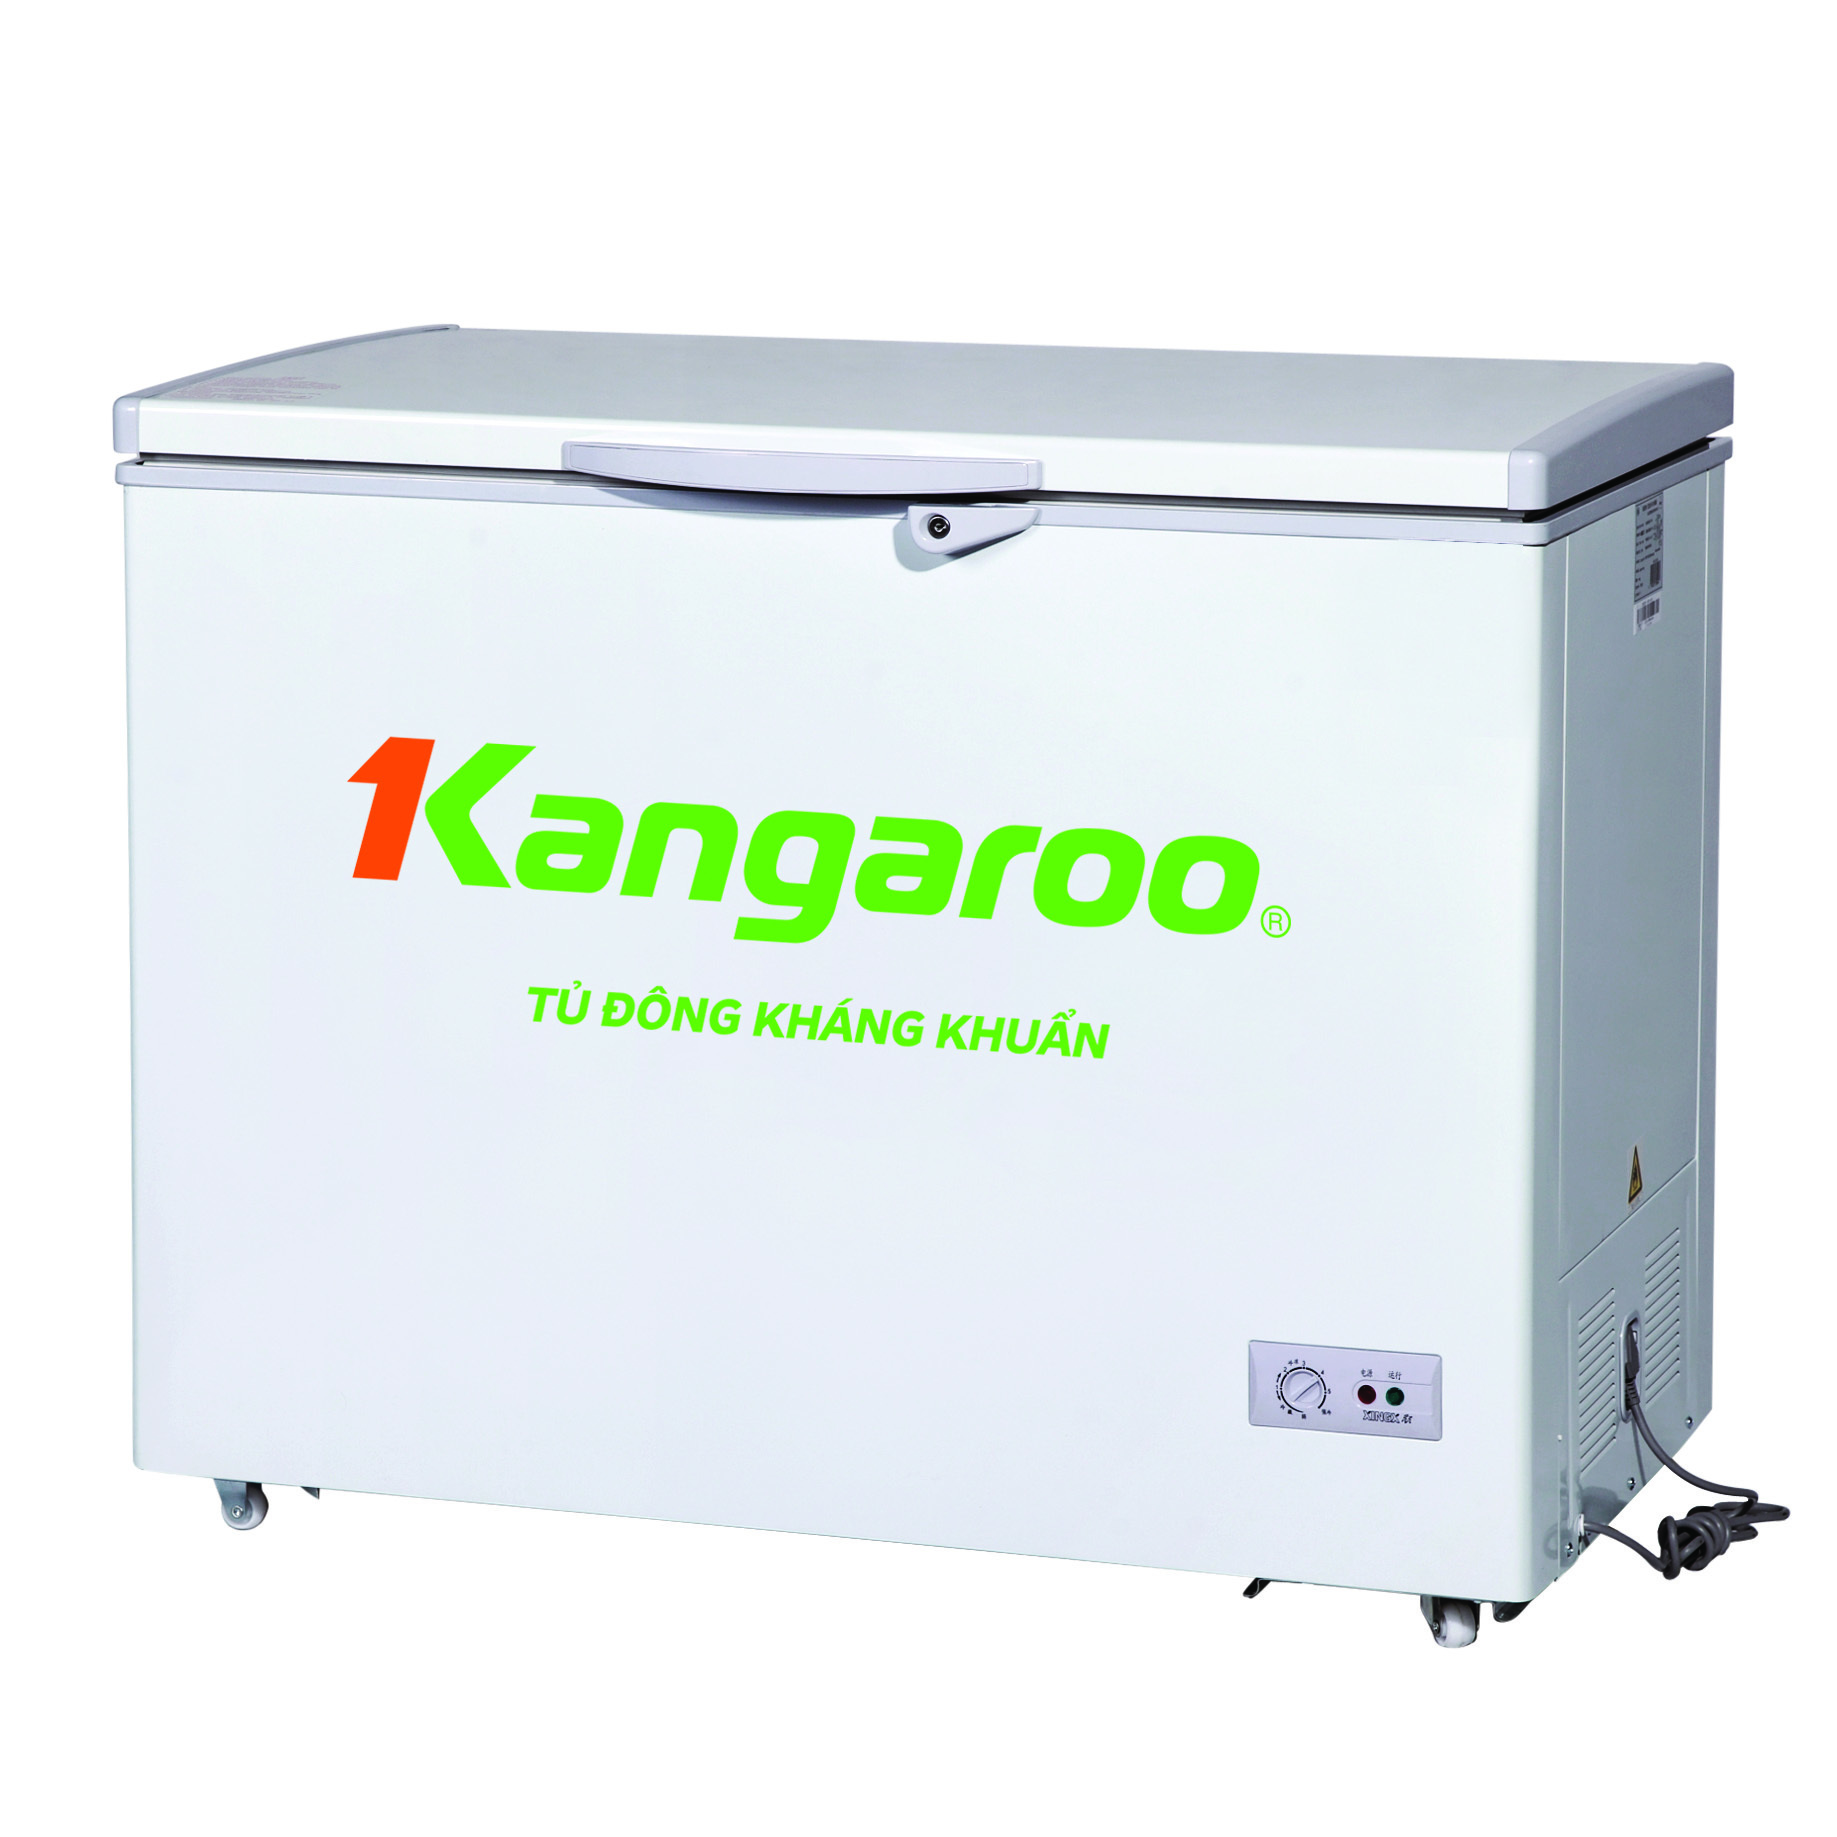 Tủ đông Kangaroo 1 ngăn 426 lít KG-428C1